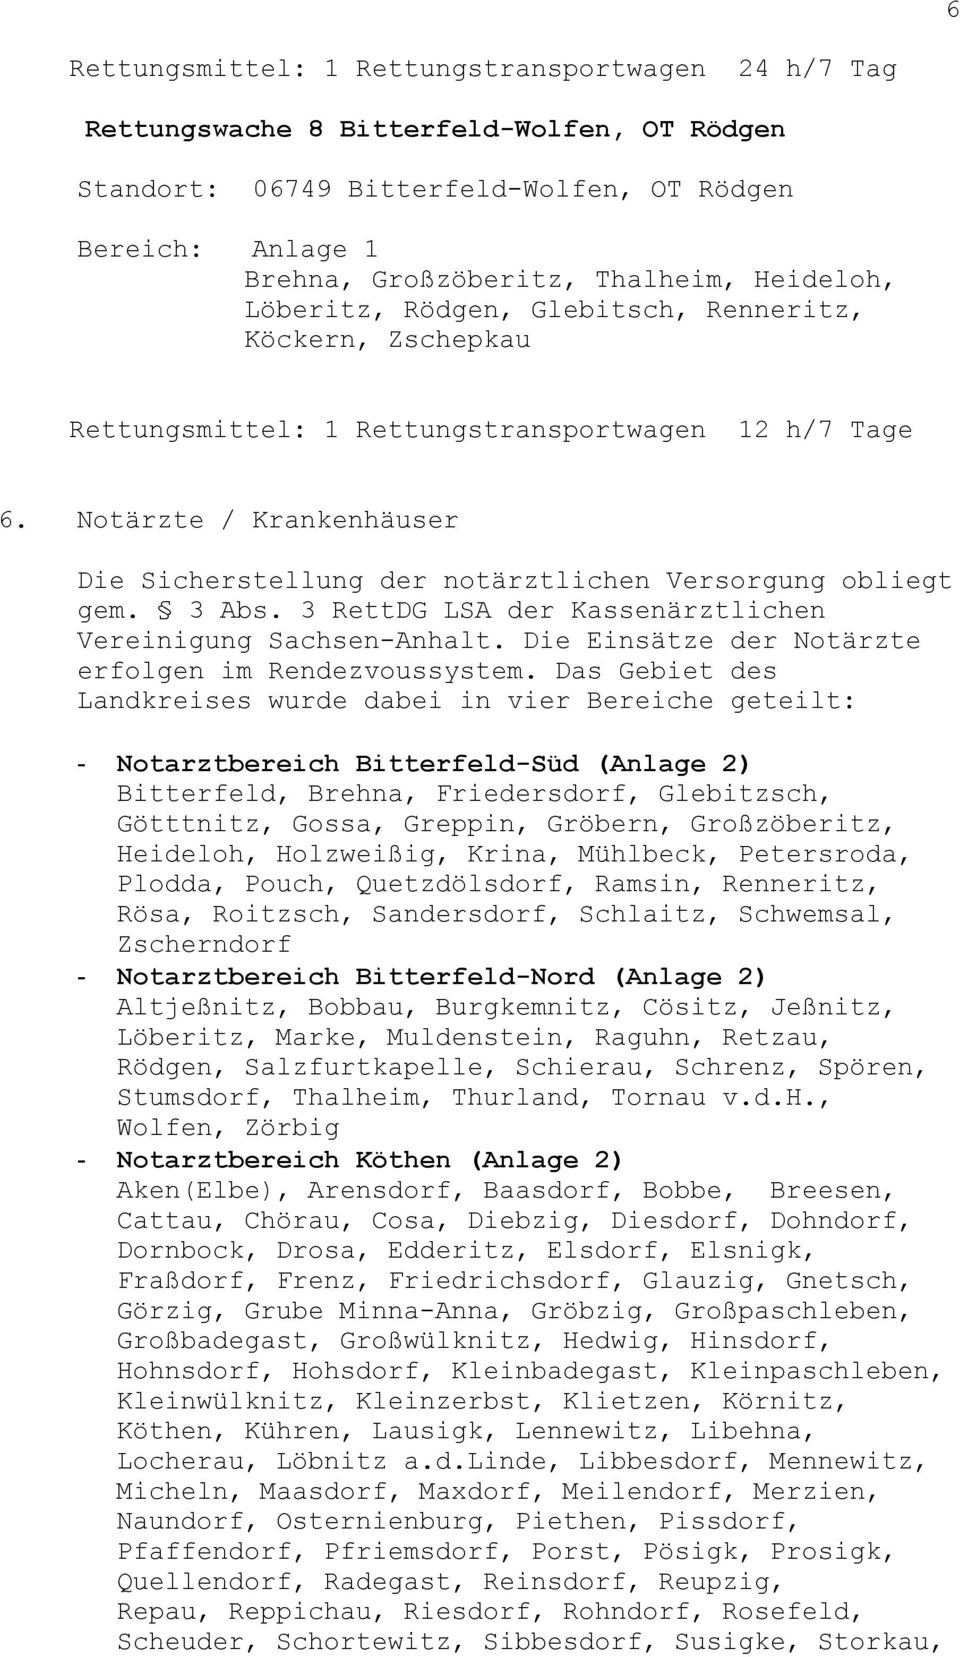 3 RettDG LSA der Kassenärztlichen Vereinigung Sachsen-Anhalt. Die Einsätze der Notärzte erfolgen im Rendezvoussystem.